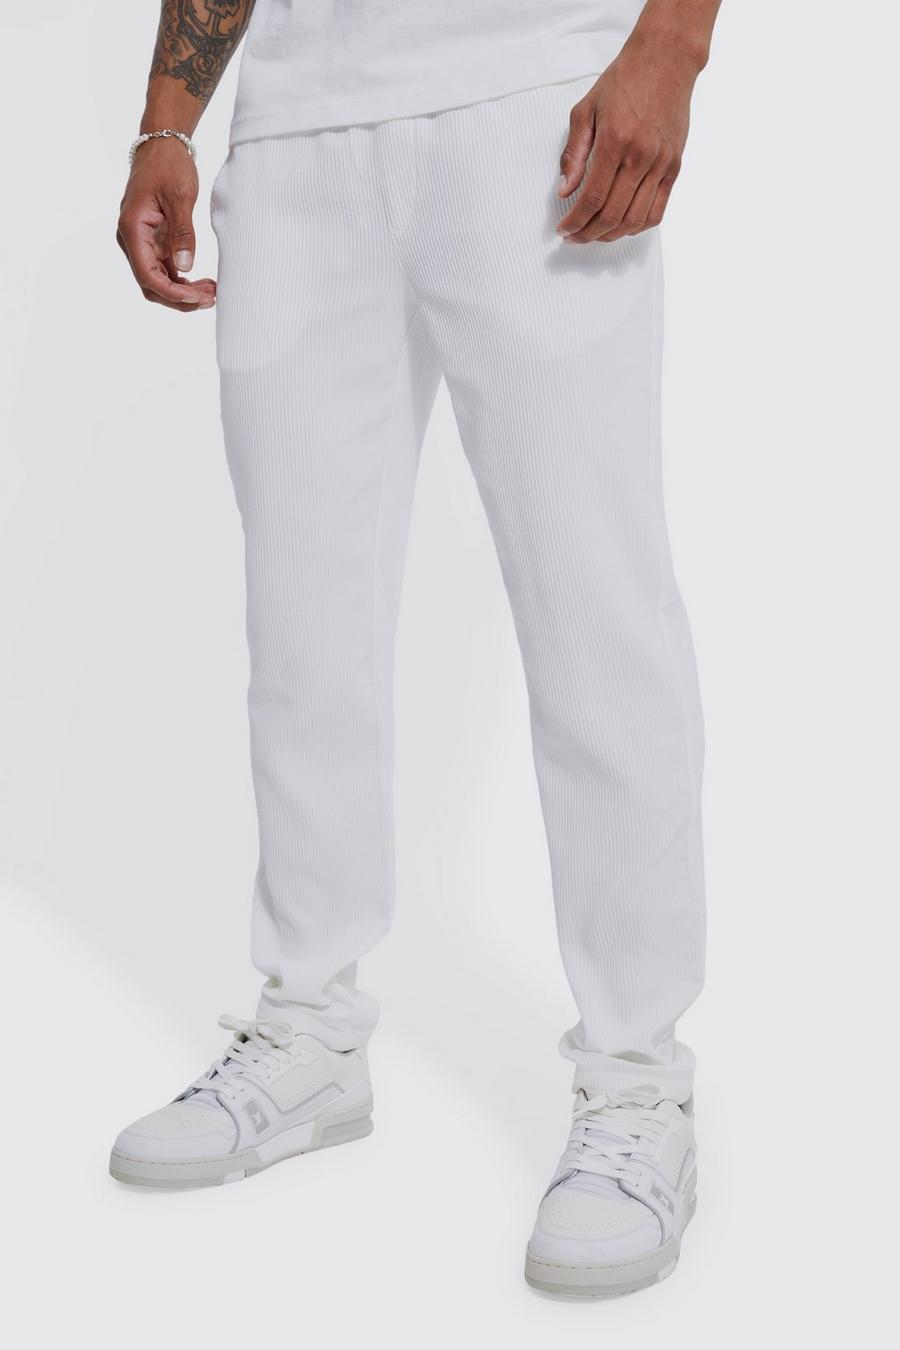 Pantalon court plissé, White